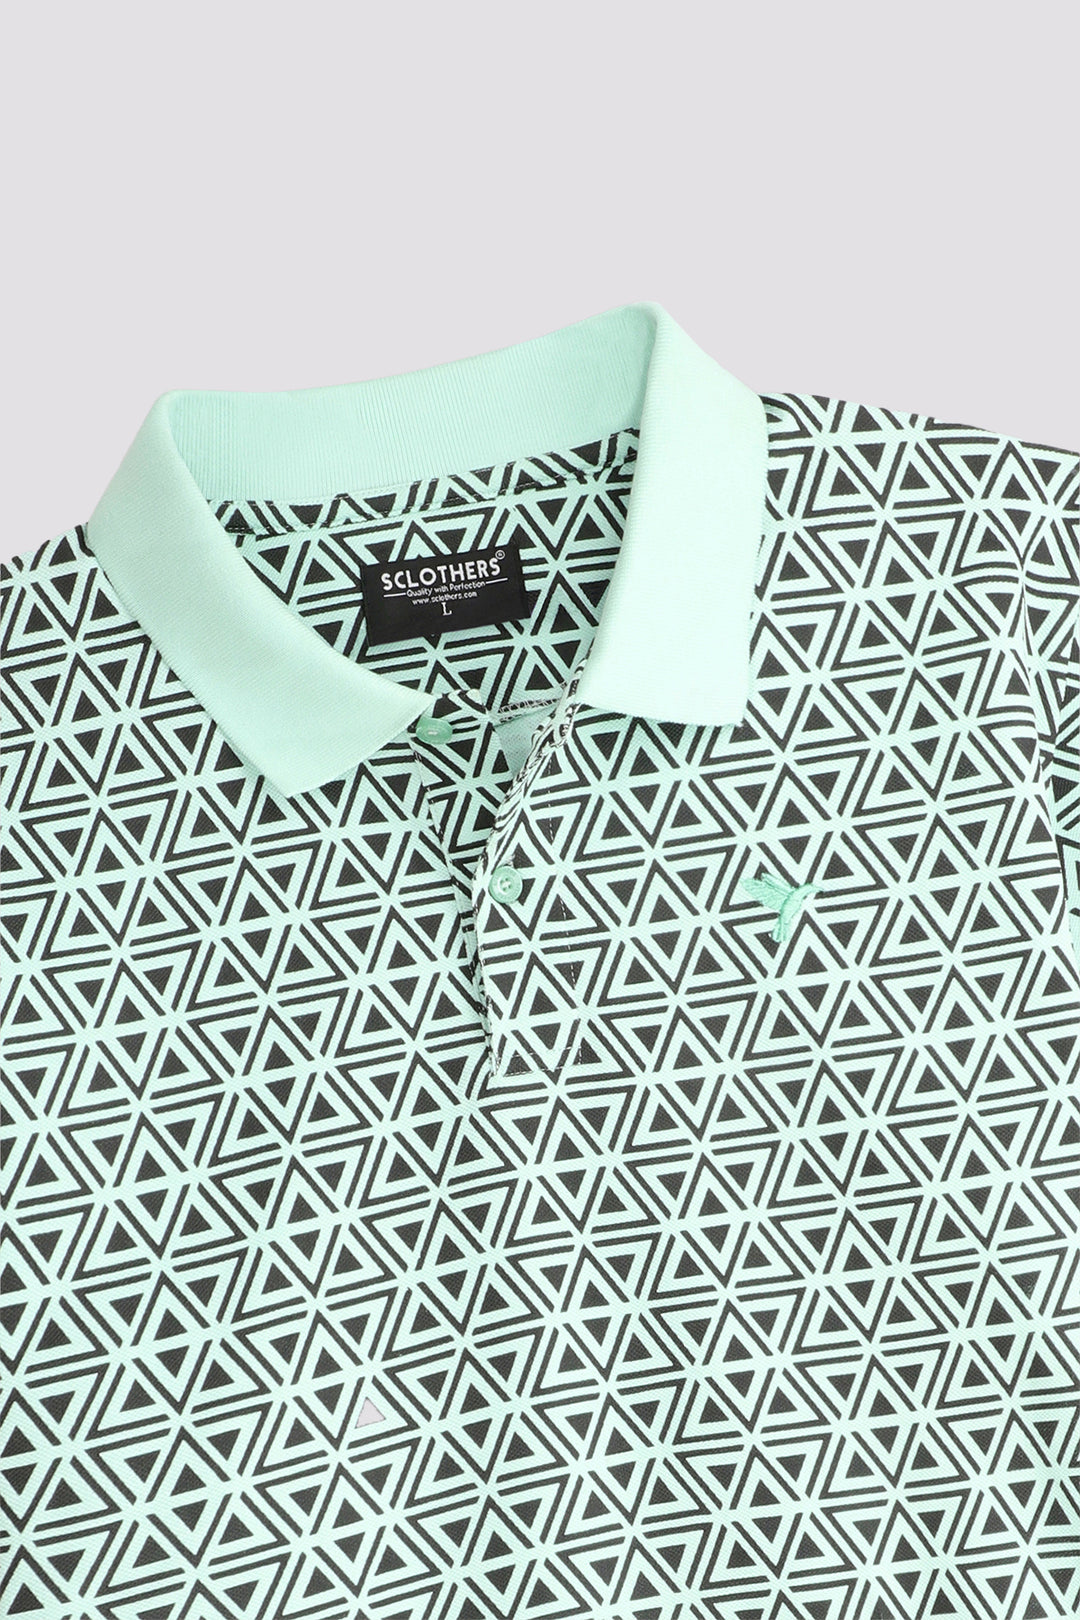 Pastel Green Geometrical Printed Polo Shirt (Plus size) - A24 - MP0252P